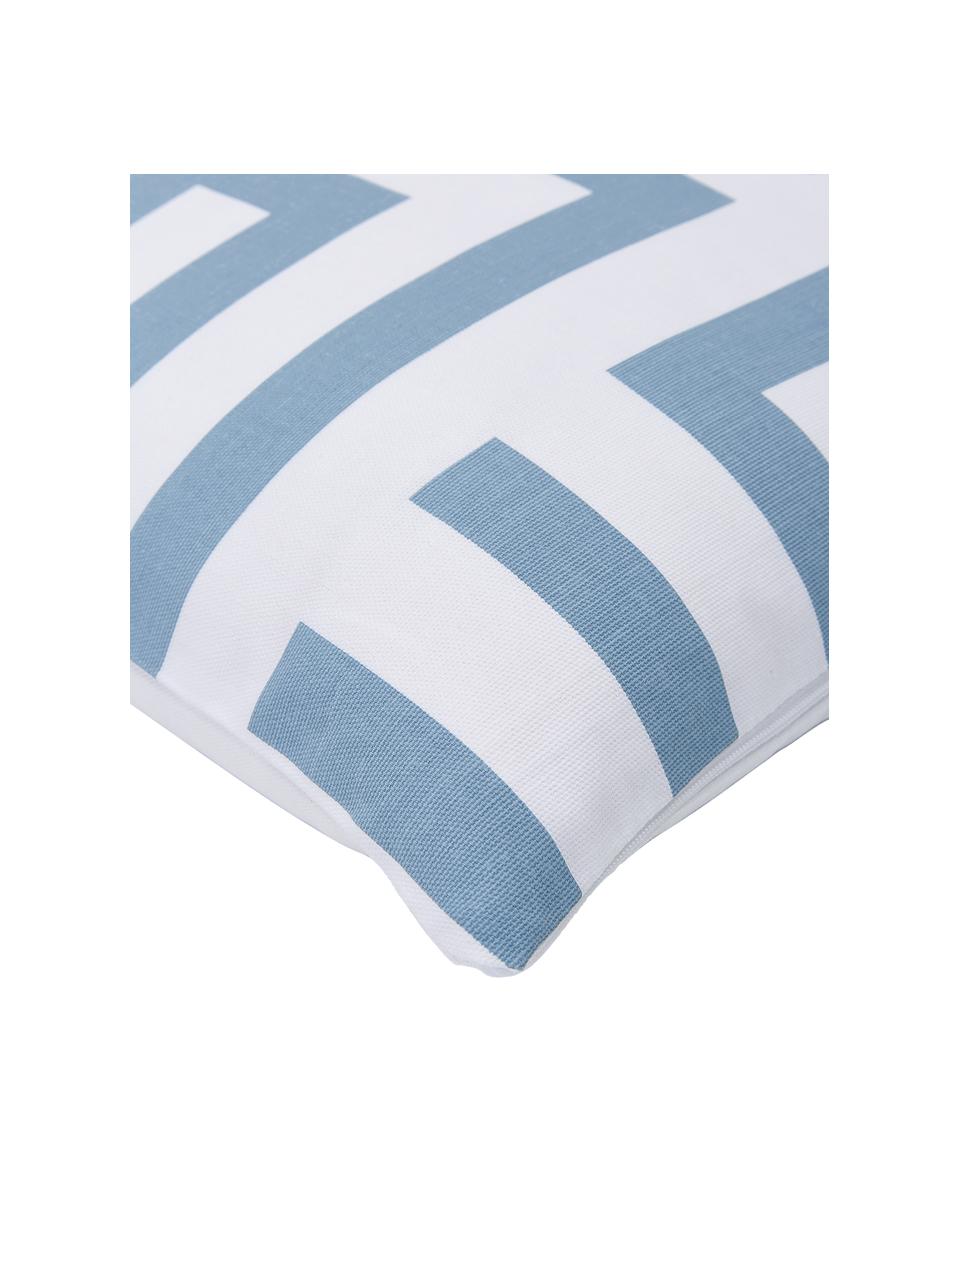 Kissenhülle Bram in Hellblau/Weiß mit grafischem Muster, 100% Baumwolle, Weiß, Hellblau, 45 x 45 cm